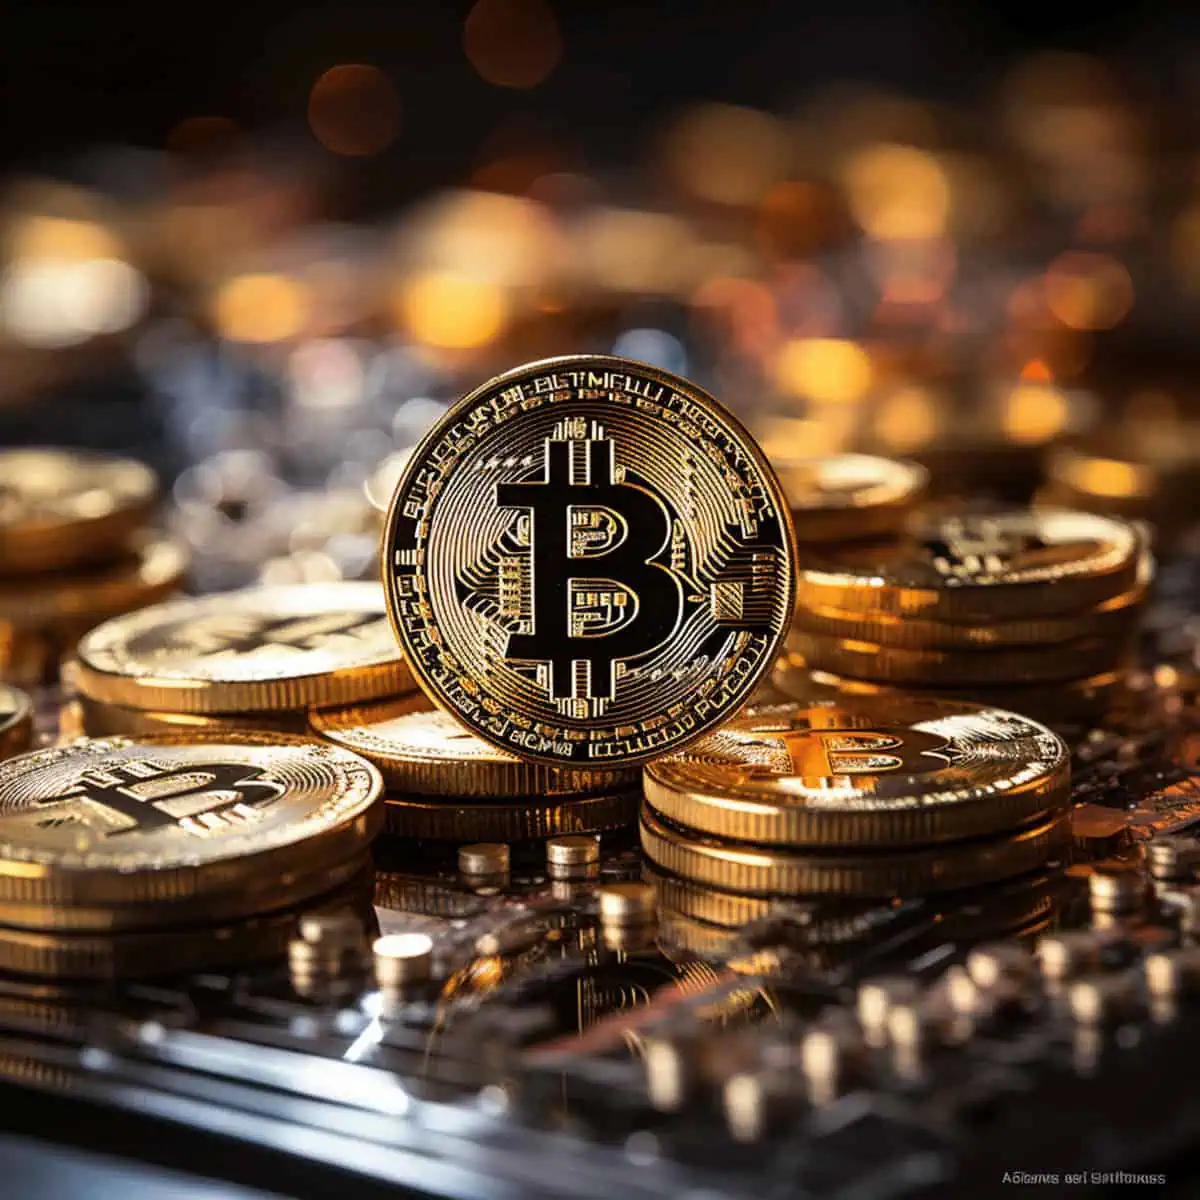 "Bitcoin ETF : Vers une approbation imminente de la SEC et une explosion du marché des crypto-monnaies ?"